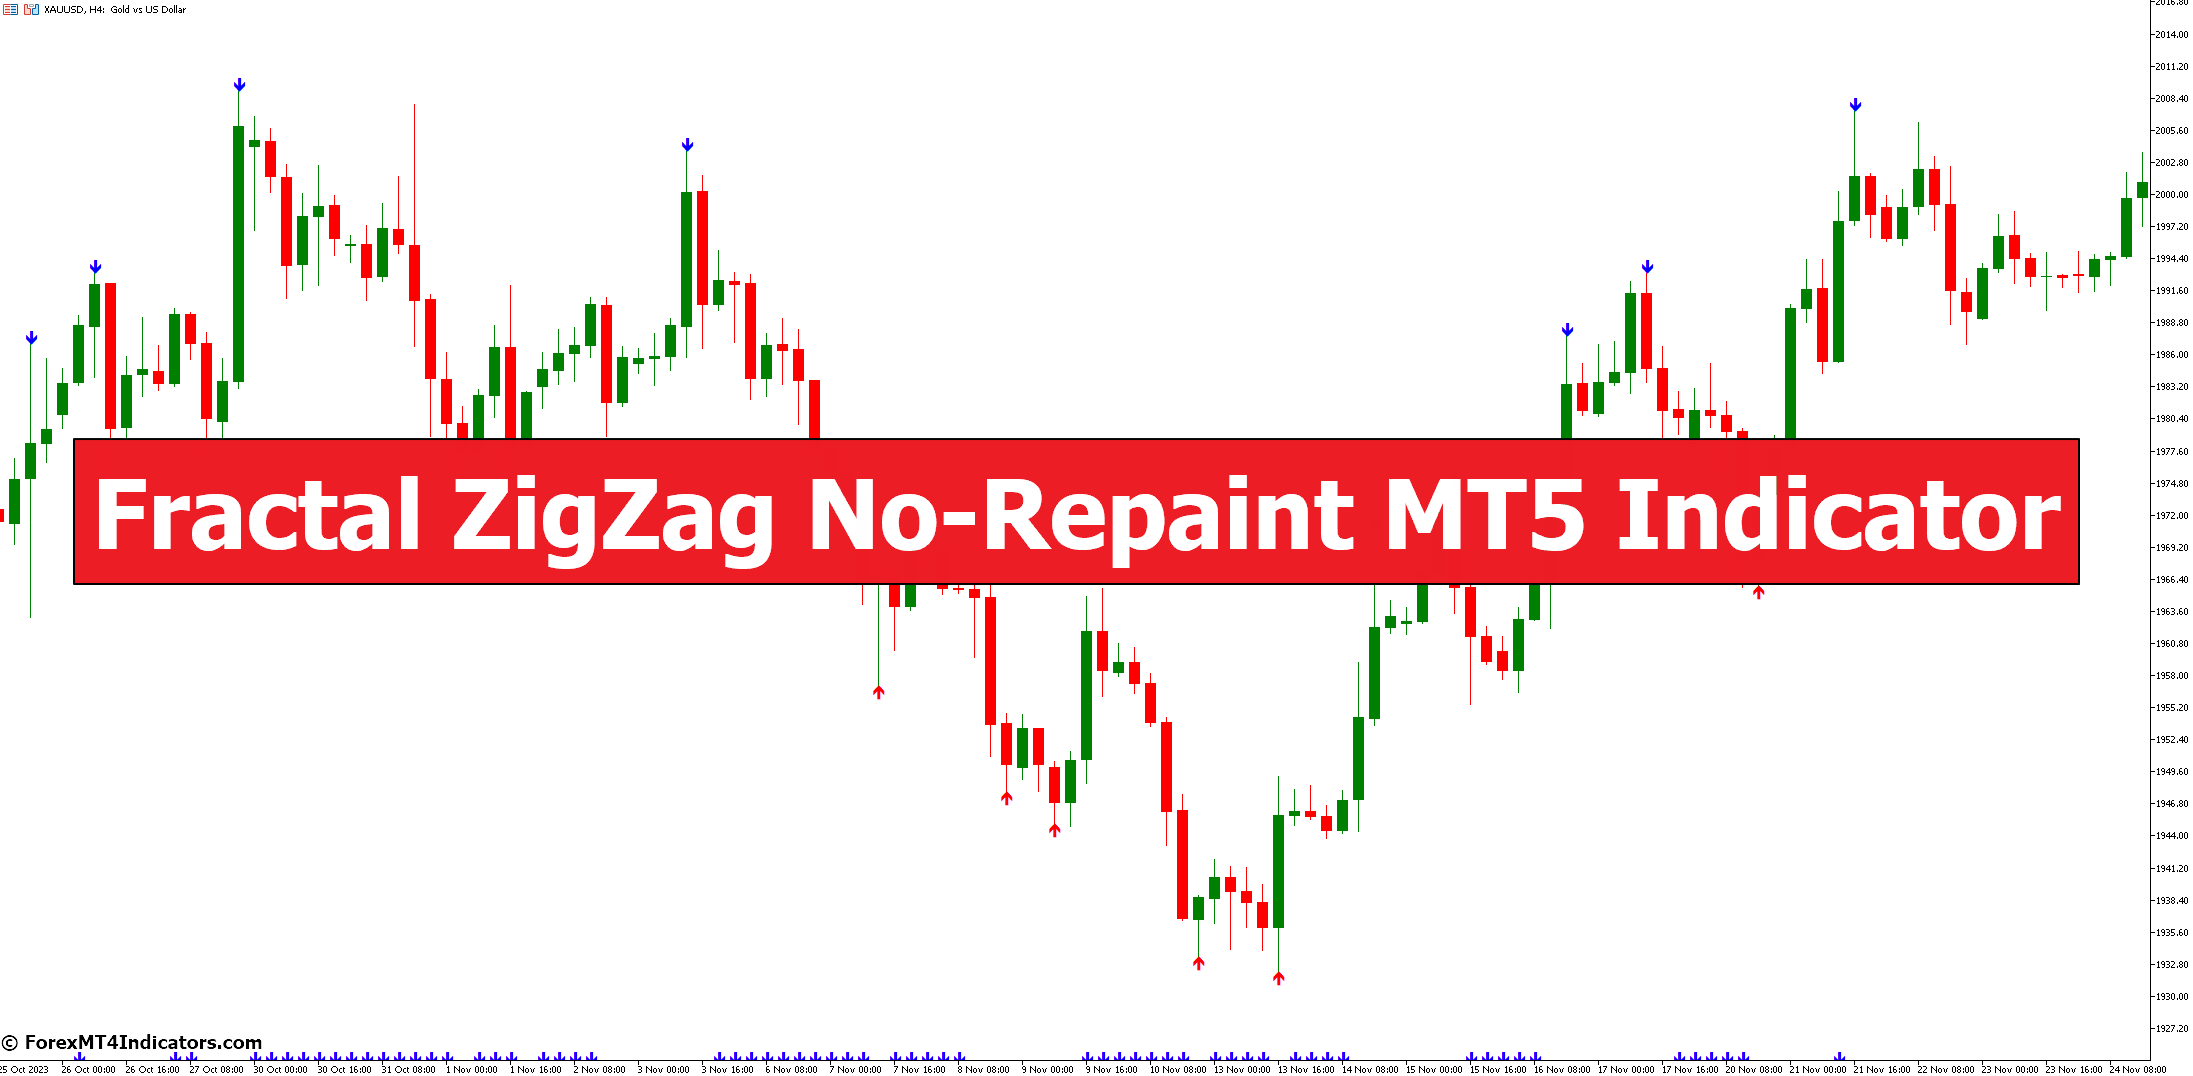 Fractal ZigZag No-Repaint MT5 Indicator